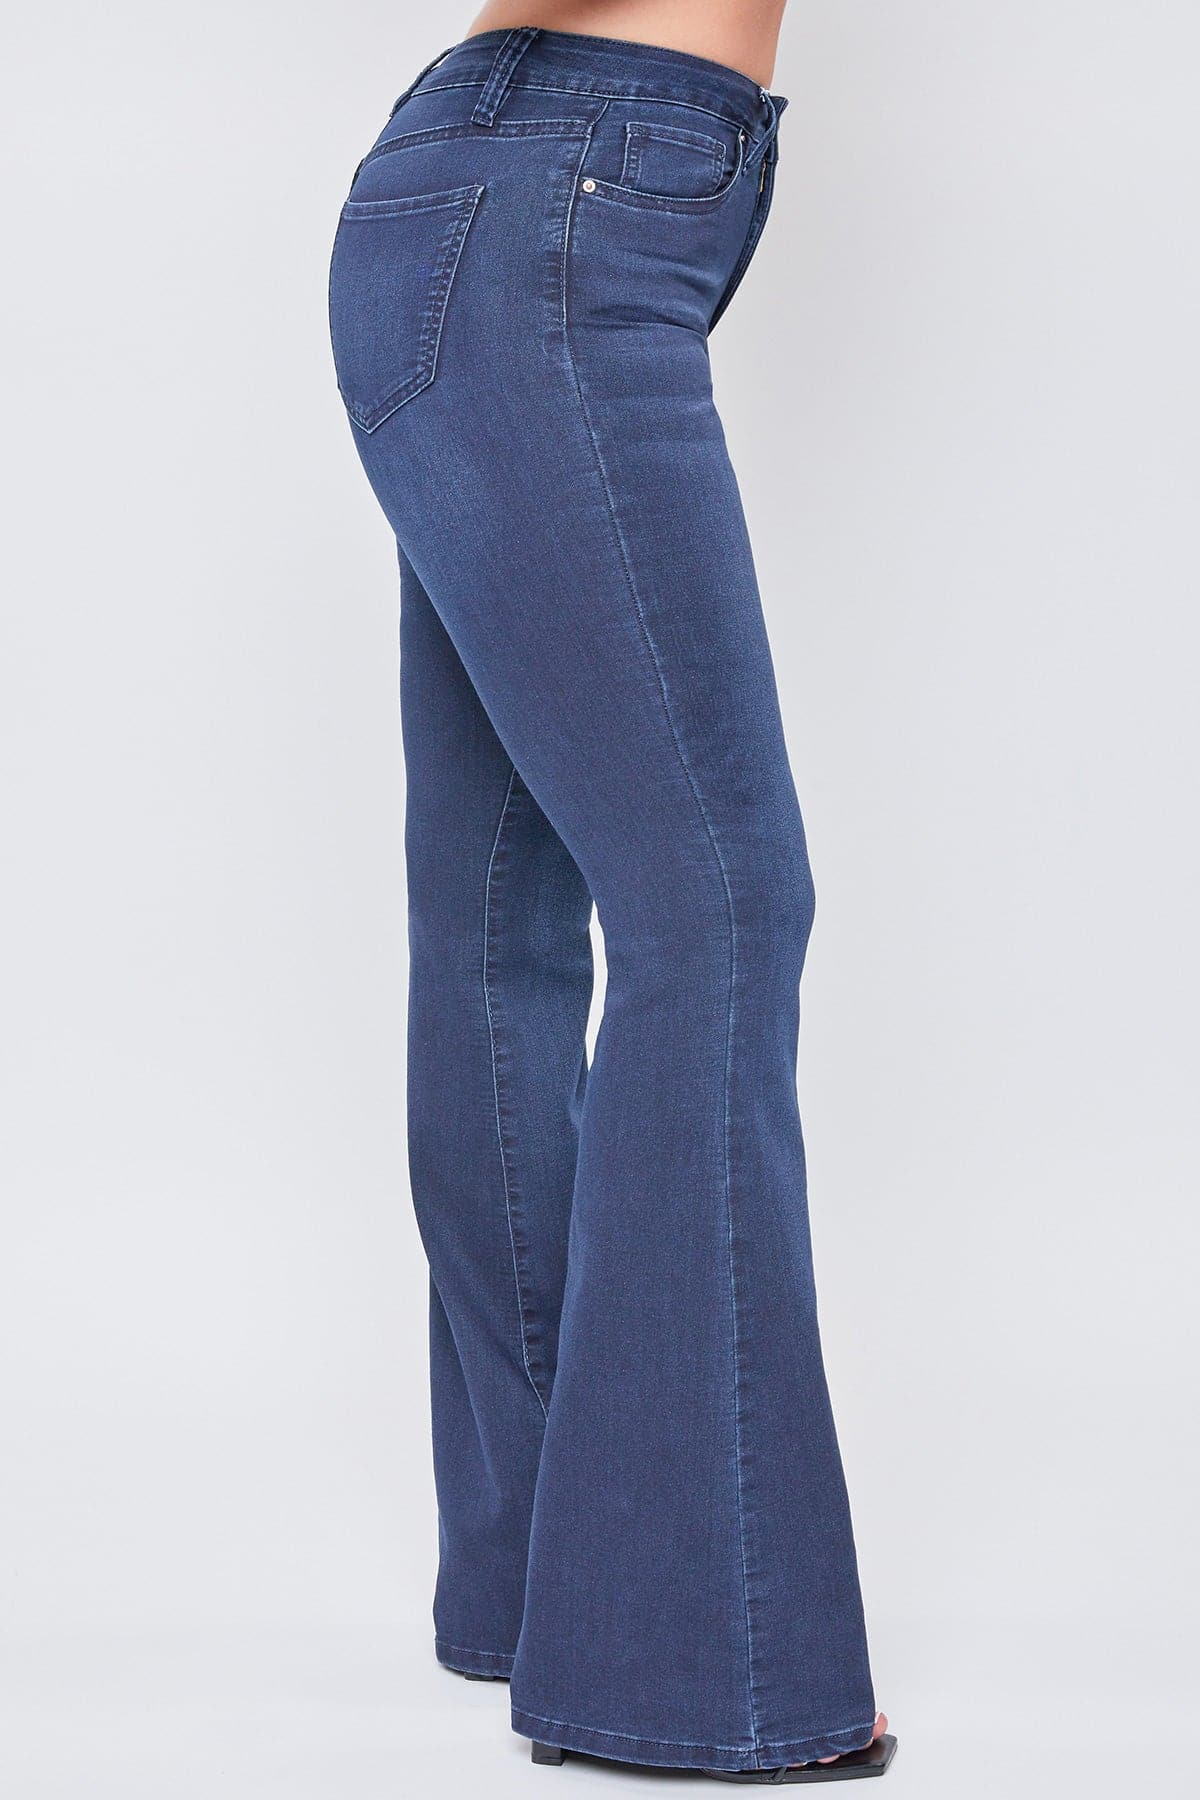 Women's Hyperdenim  Flare Jeans - Long & Regular Inseam